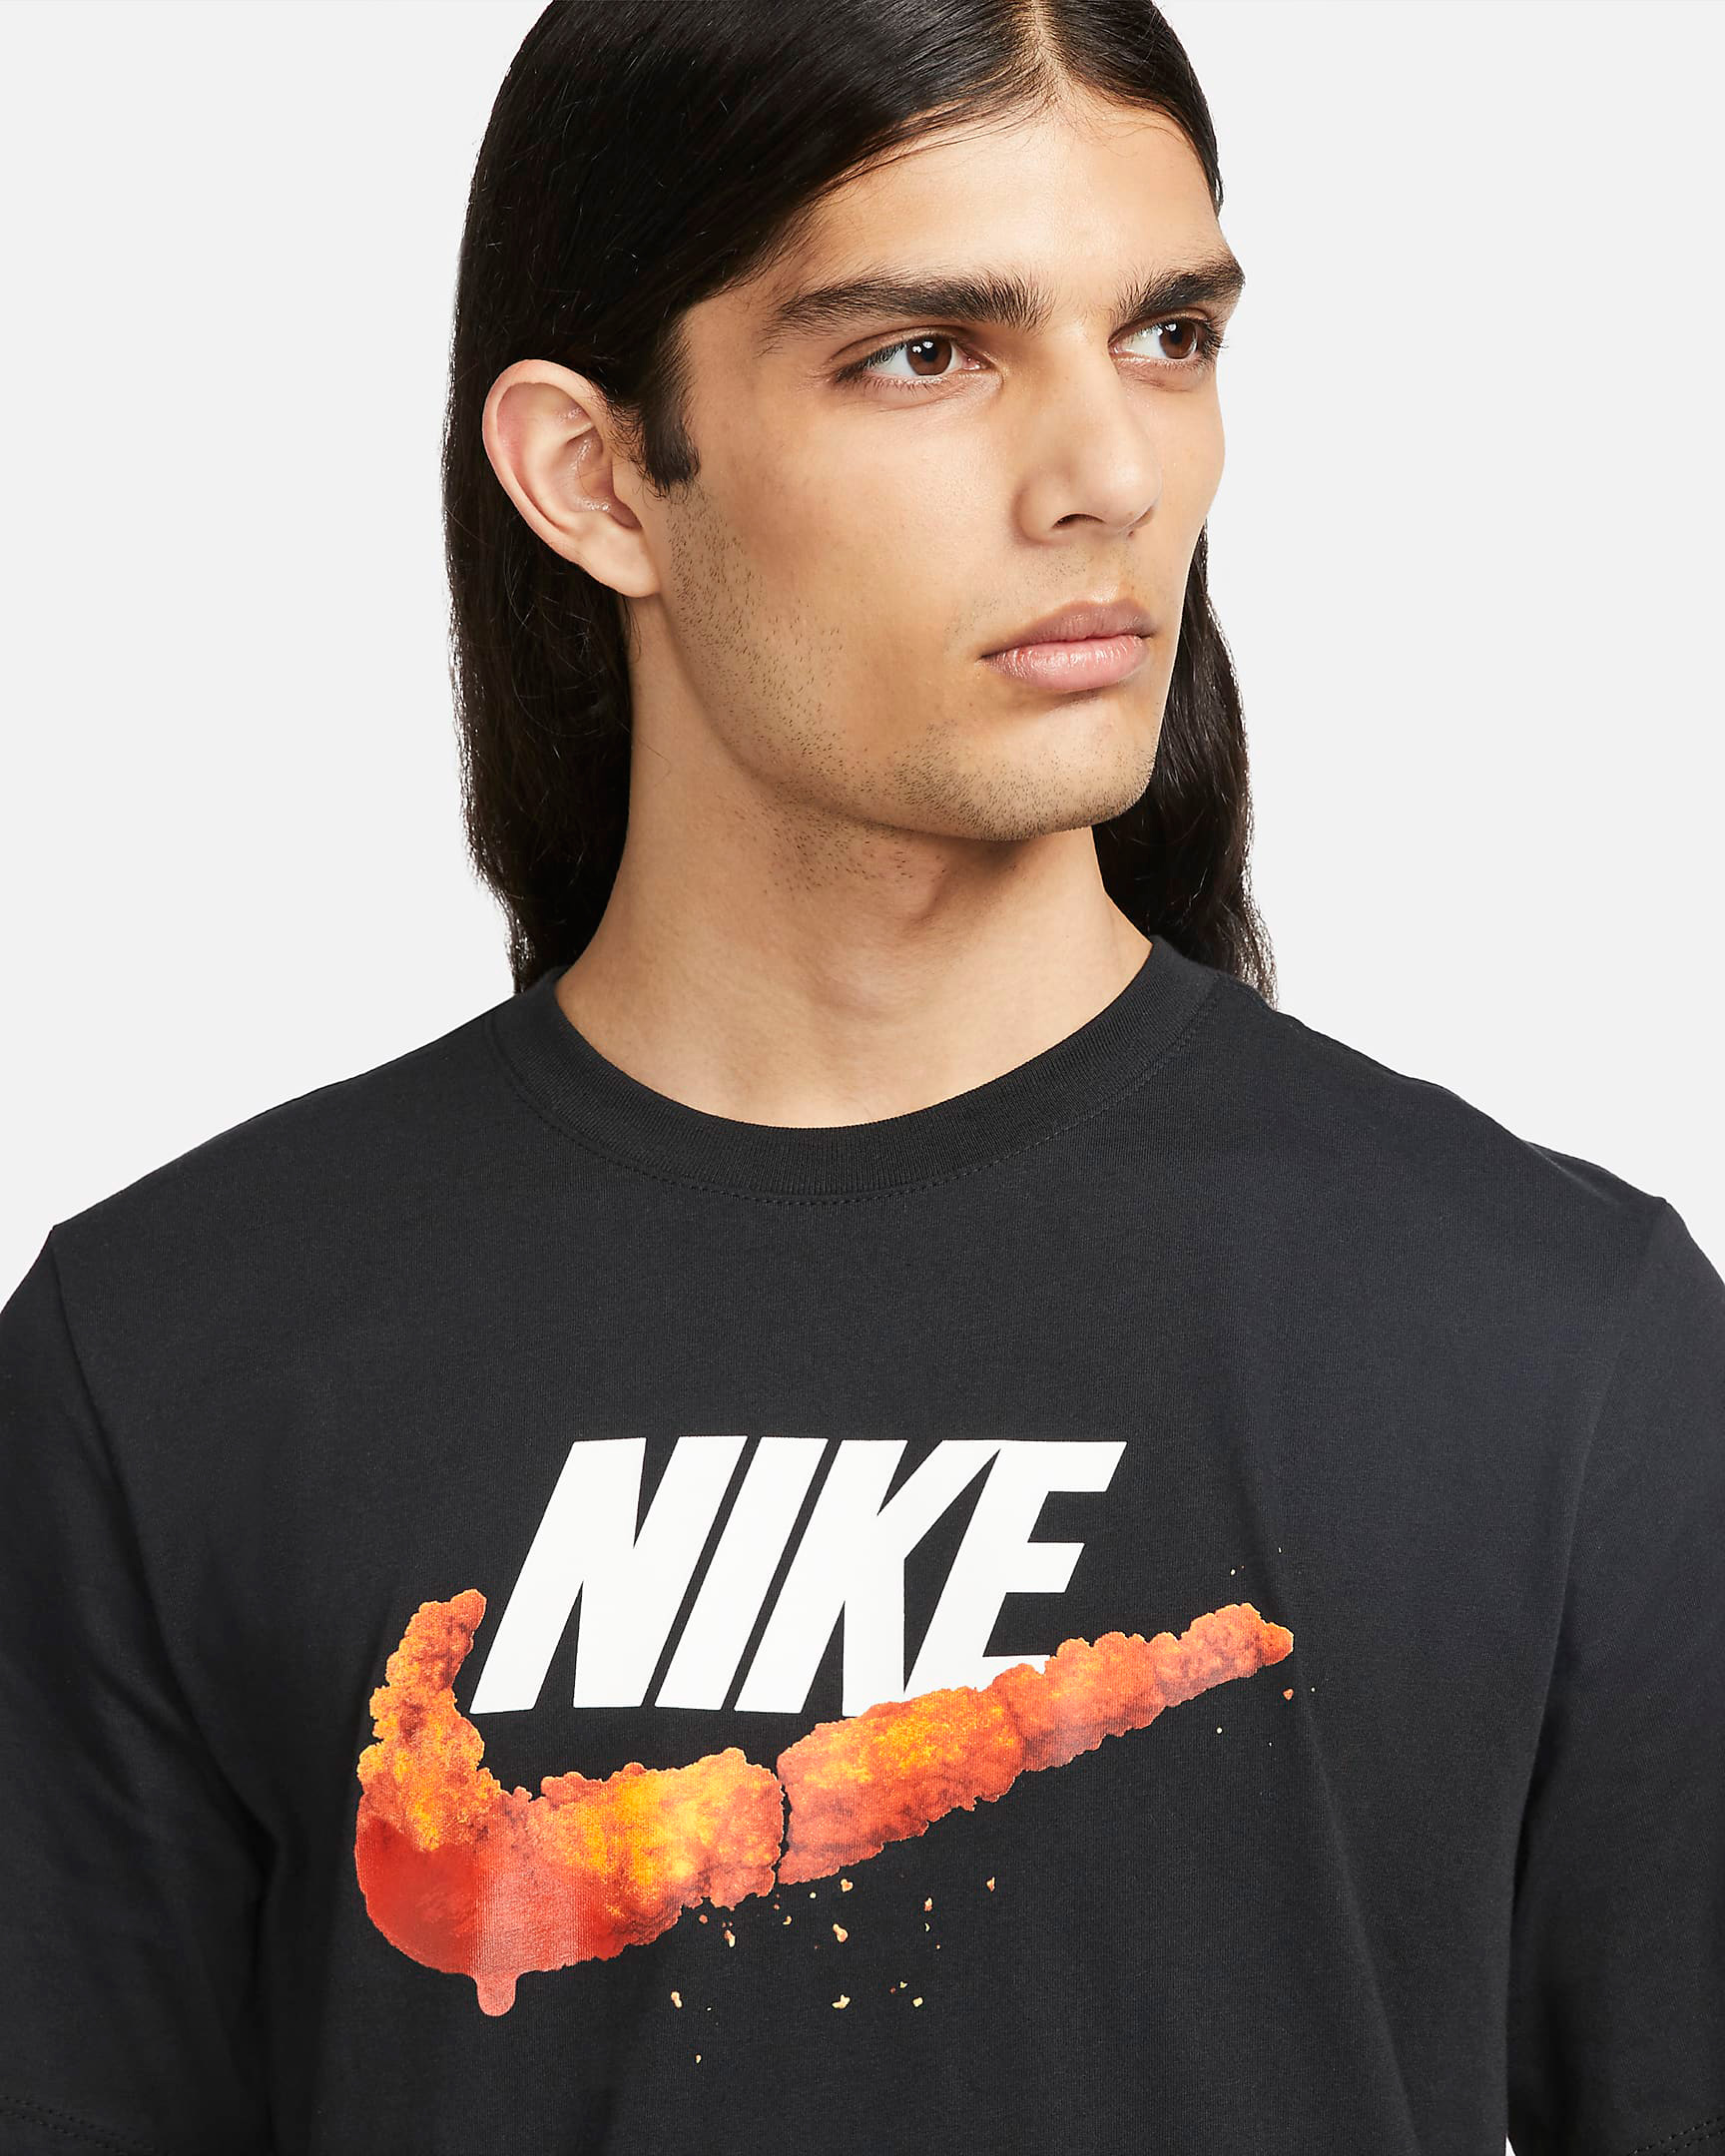 nike-deep-fried-shrimp-shirt-black-orange